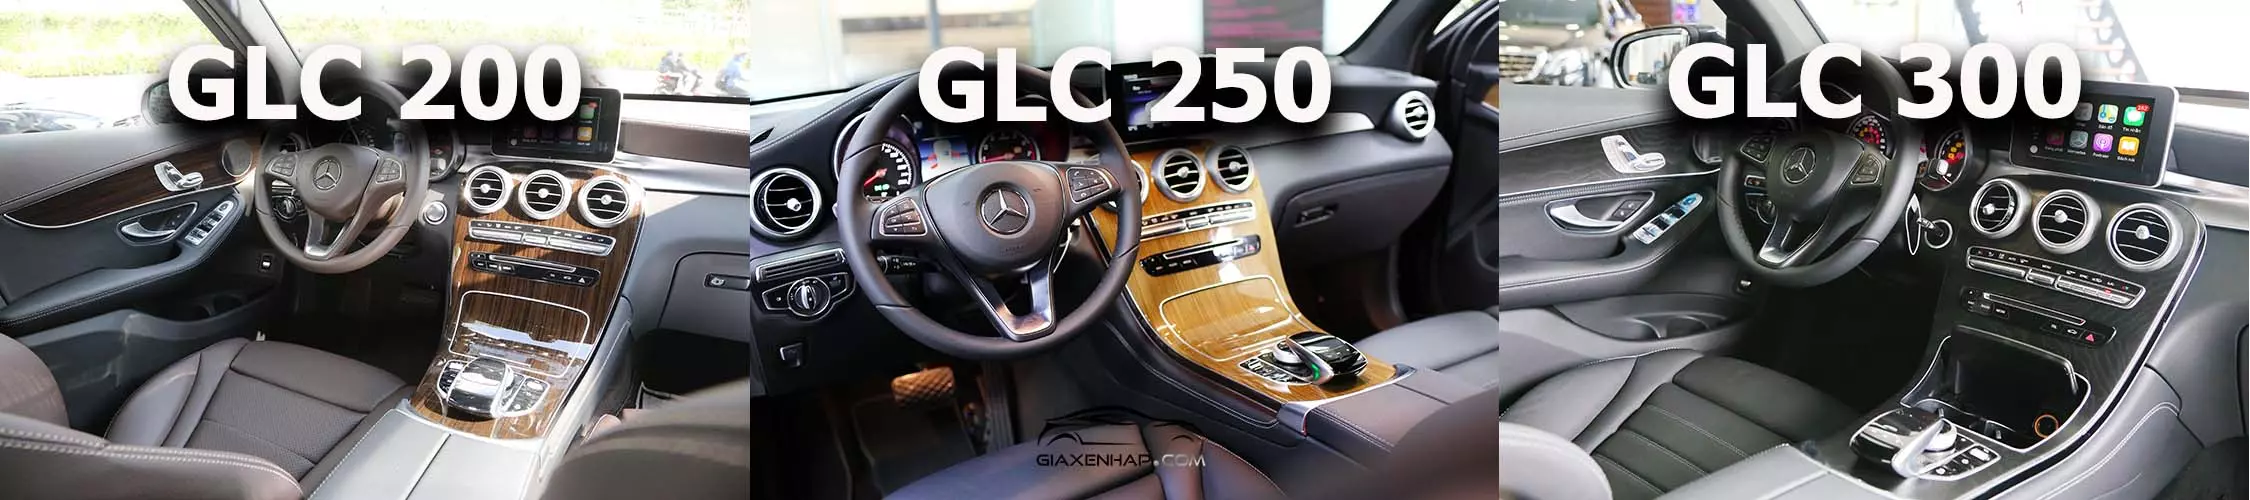 Đánh giá Mercedes-Benz GLC - Touch Pad